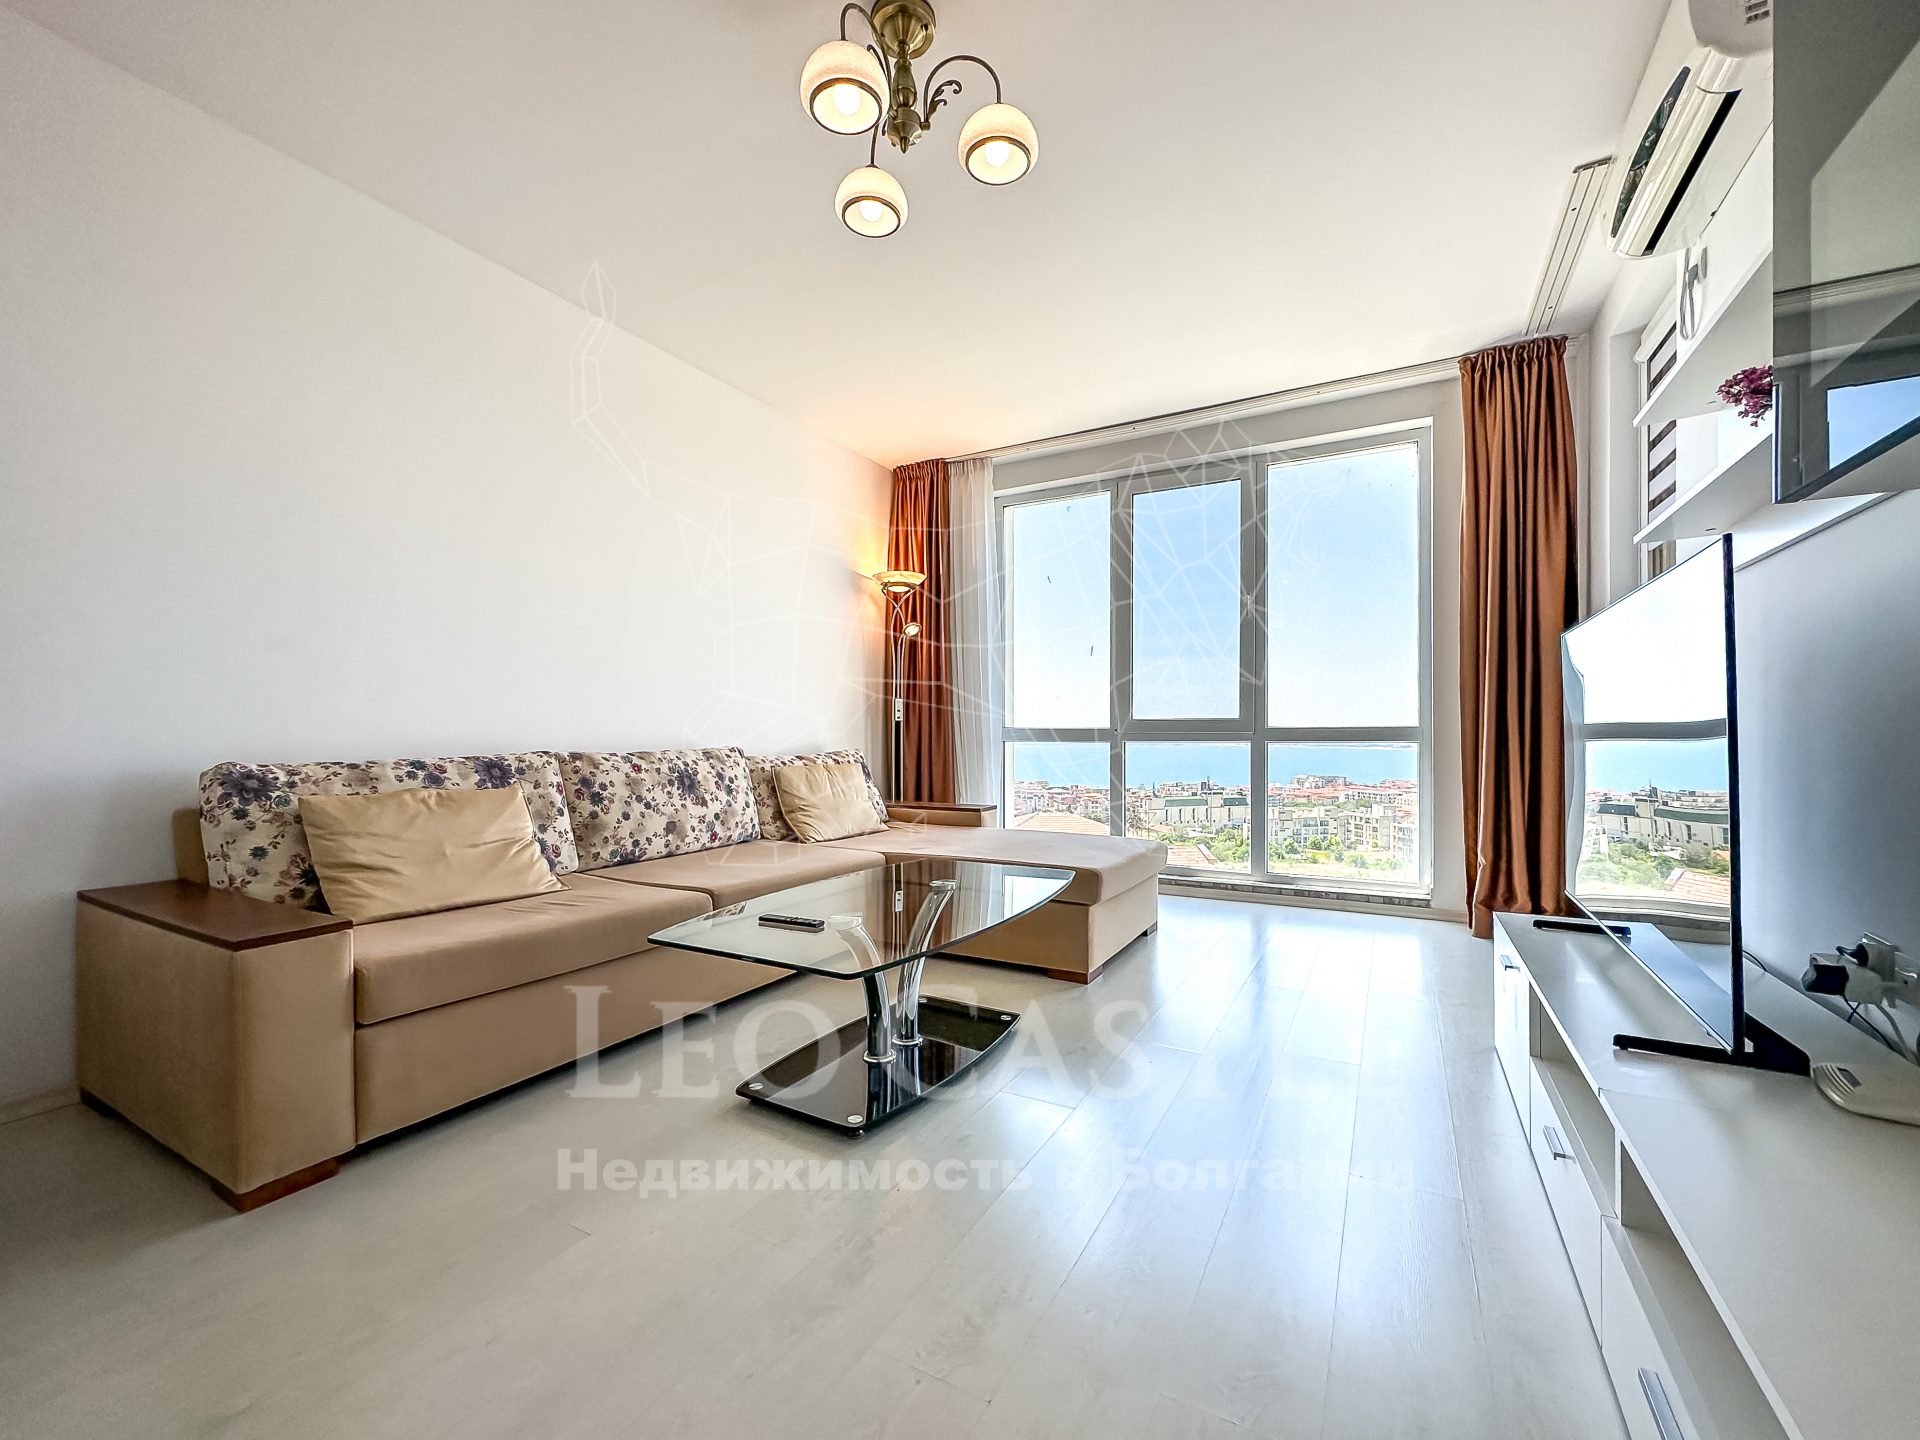 Двухкомнатную квартиру с уникальным панорамным видом на море